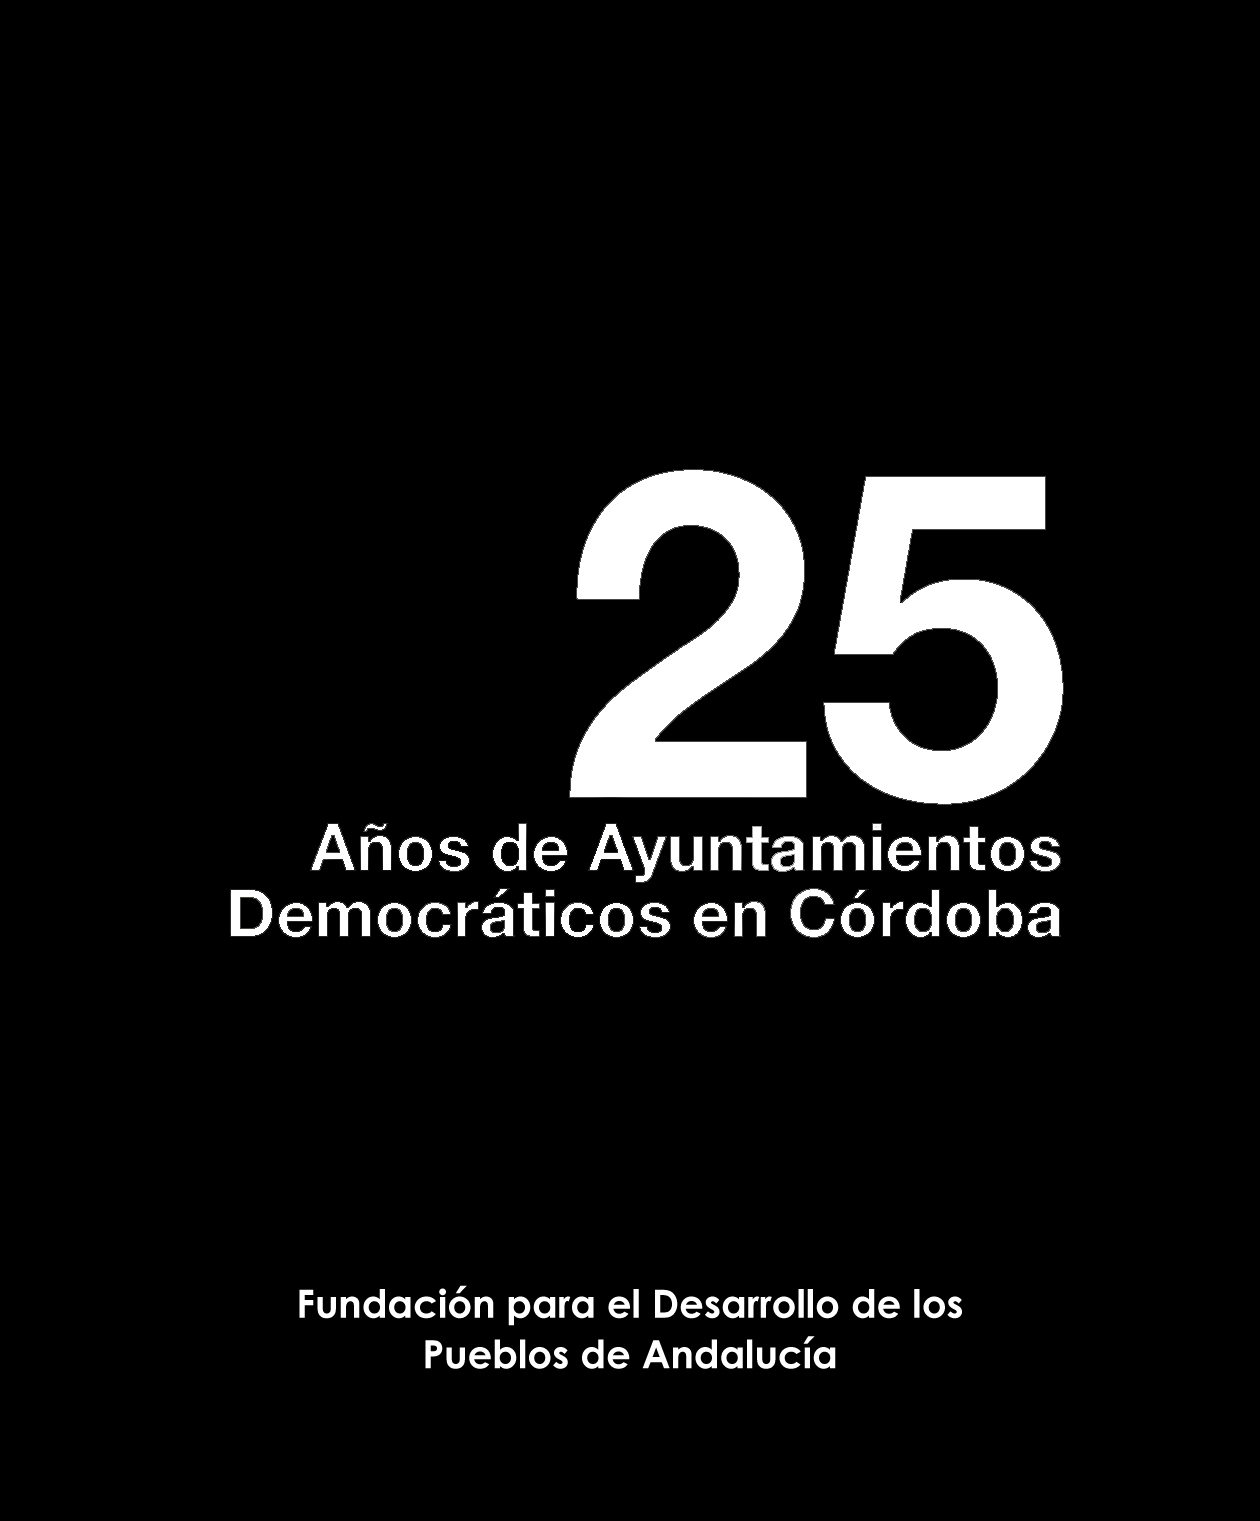 25 Años de Ayuntamientos Democráticos en Córdoba.